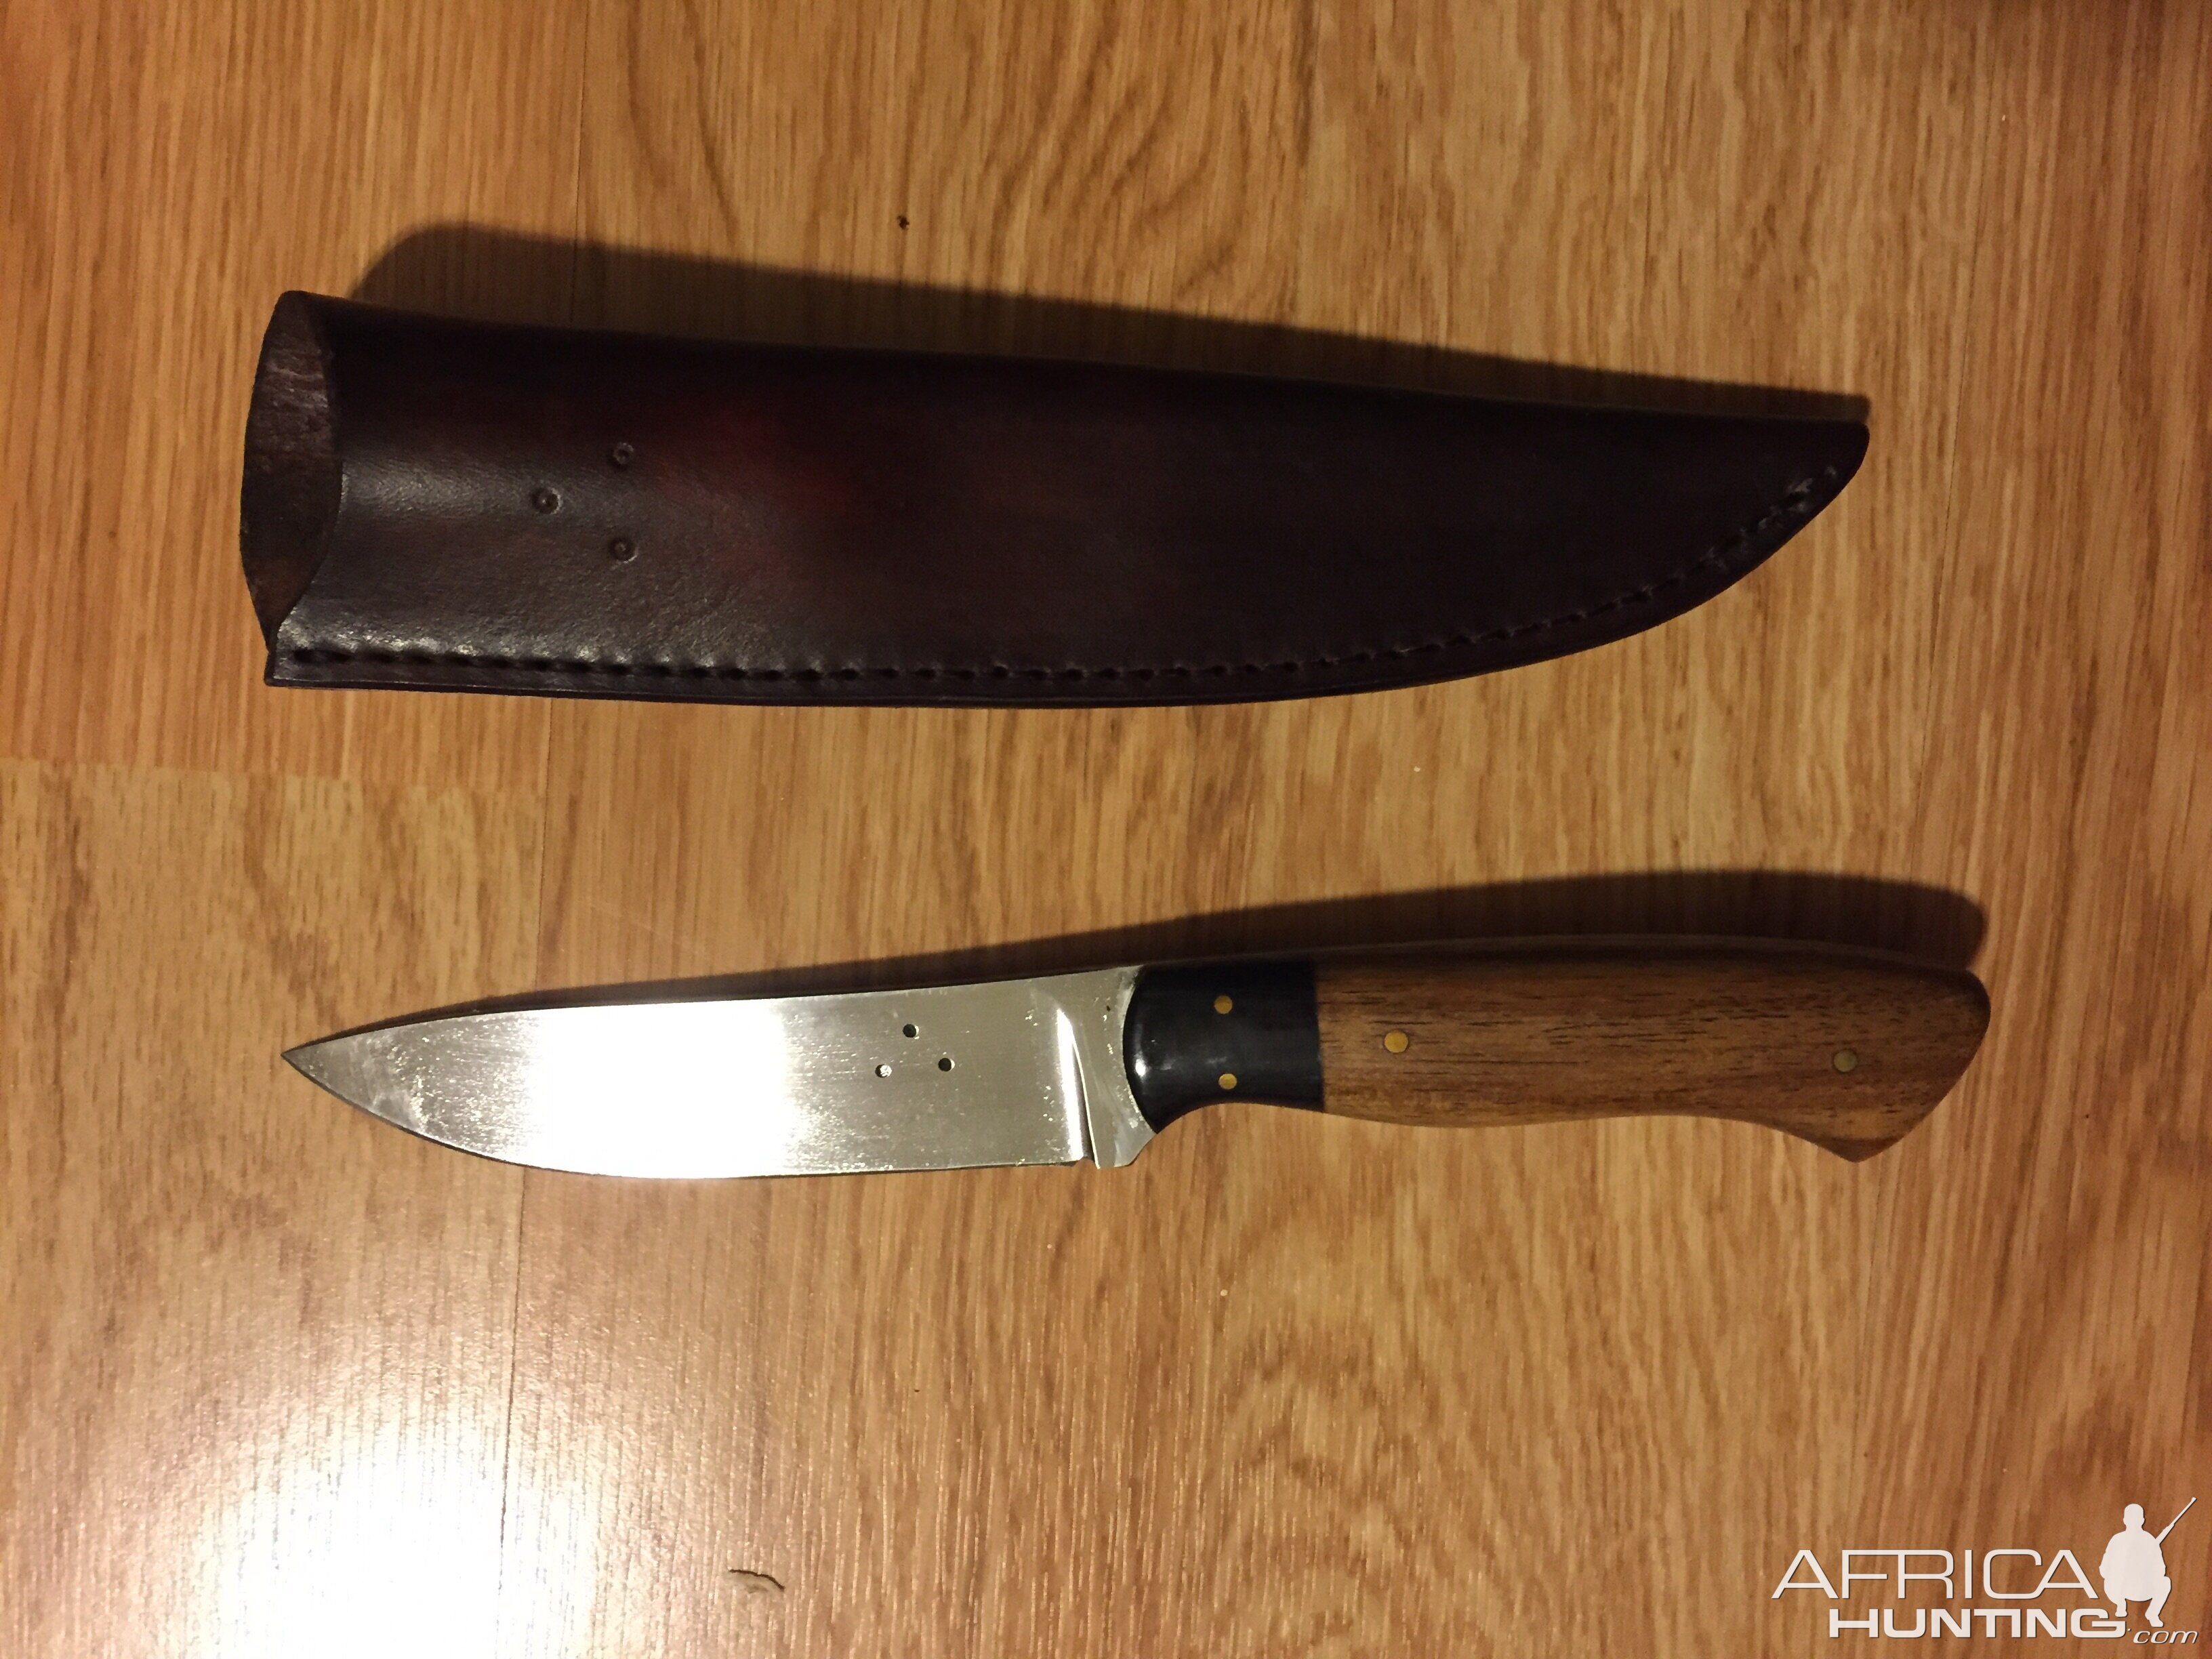 Knife received from Von Gruff